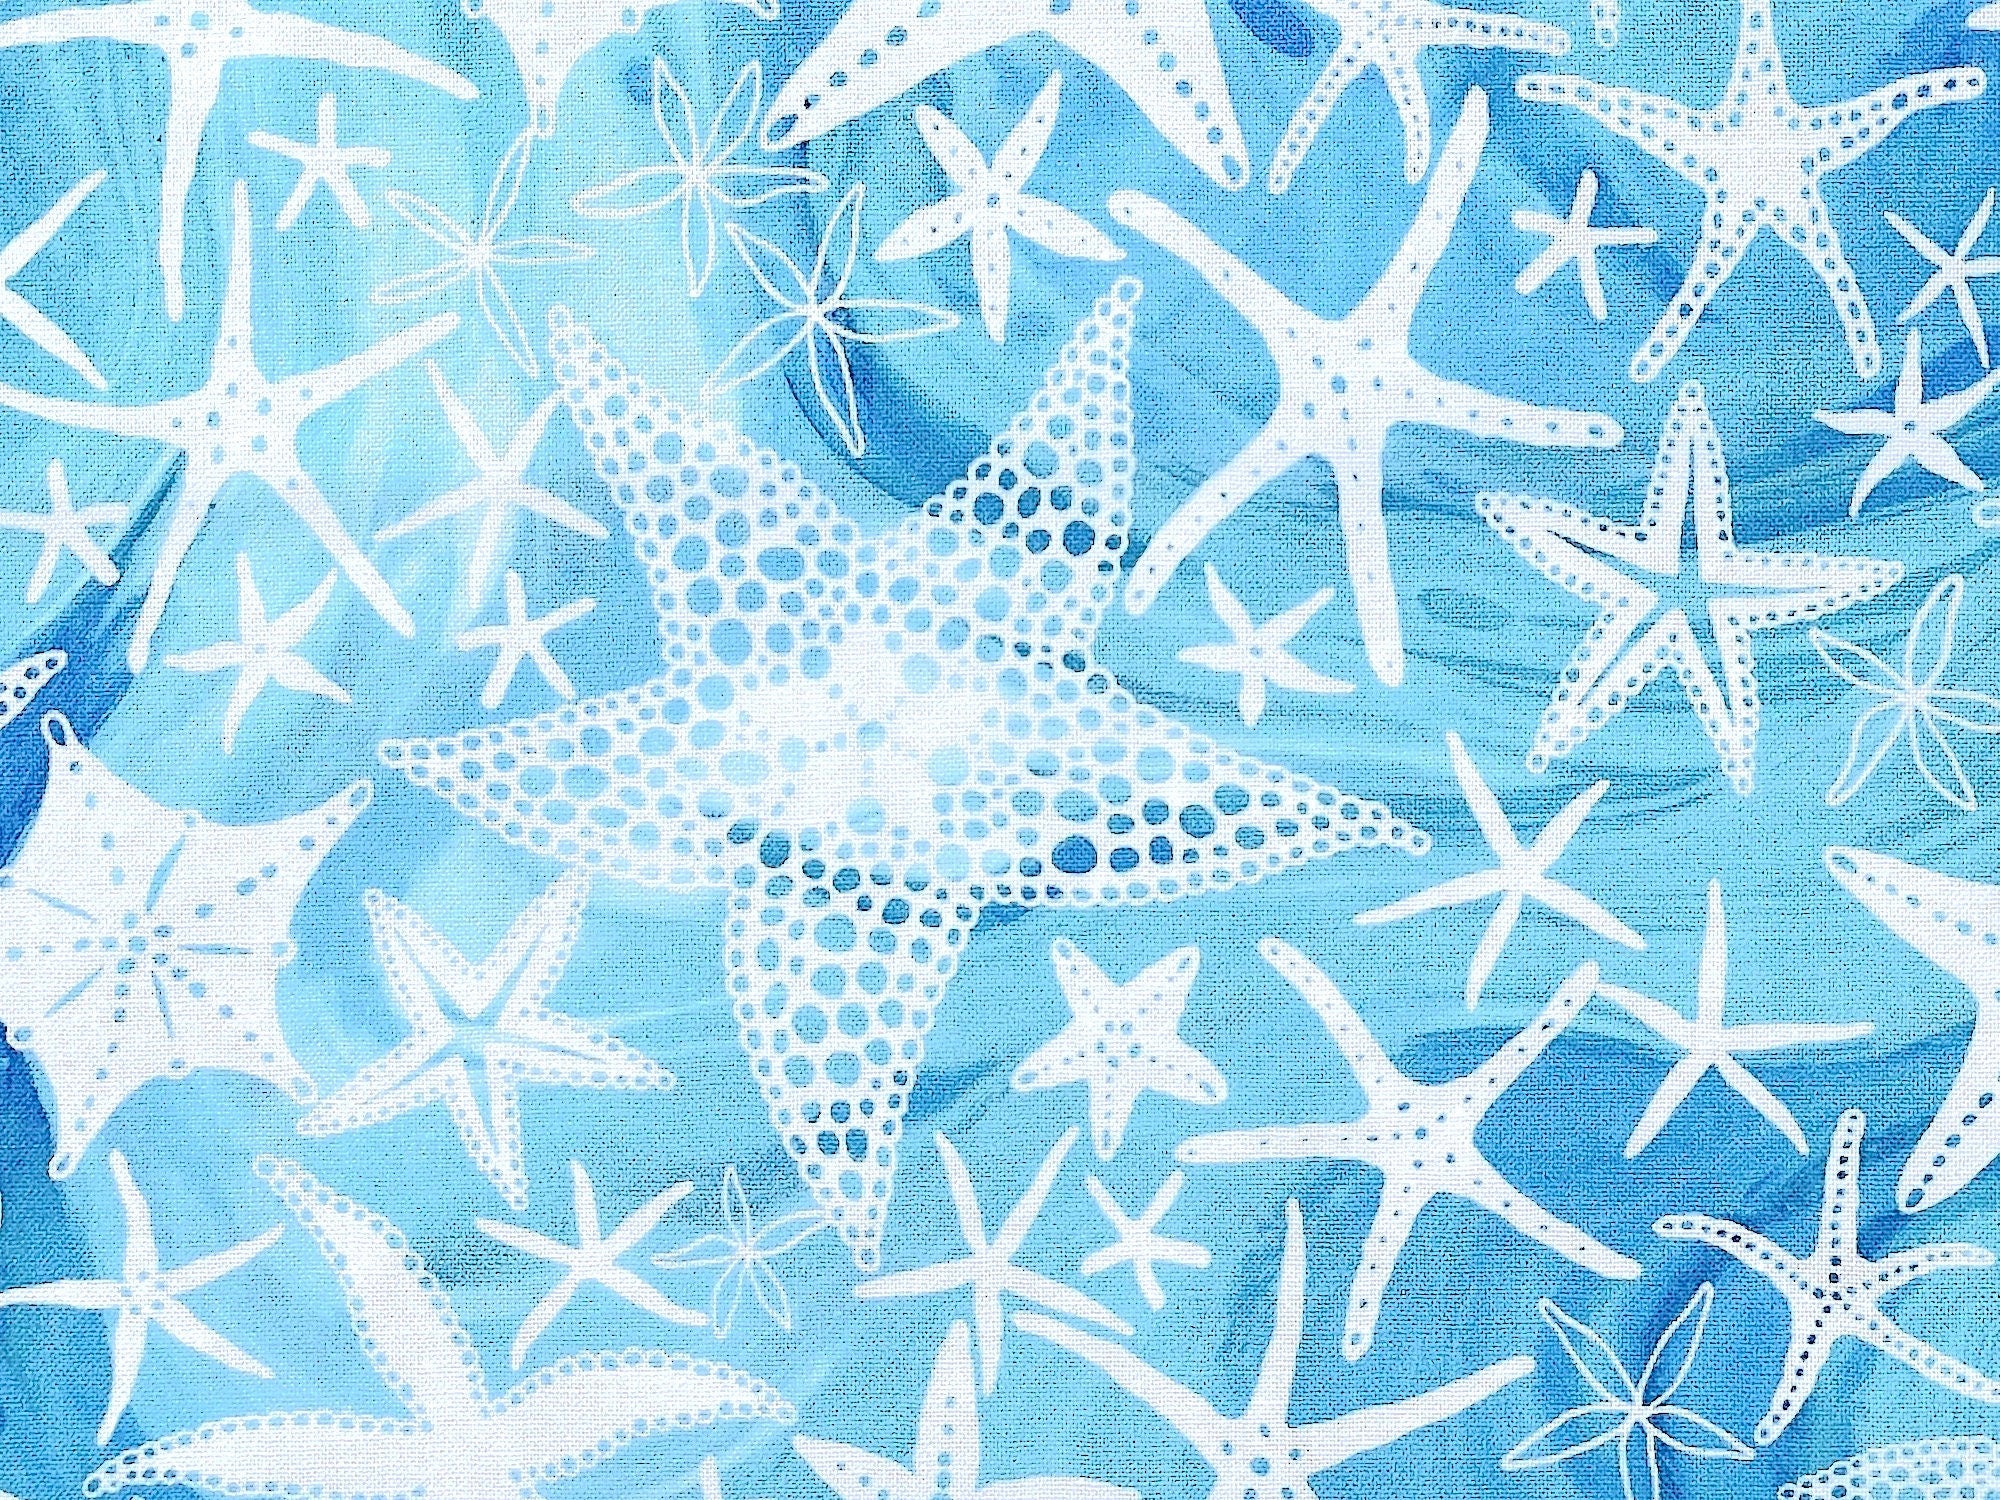 Close up of starfish.